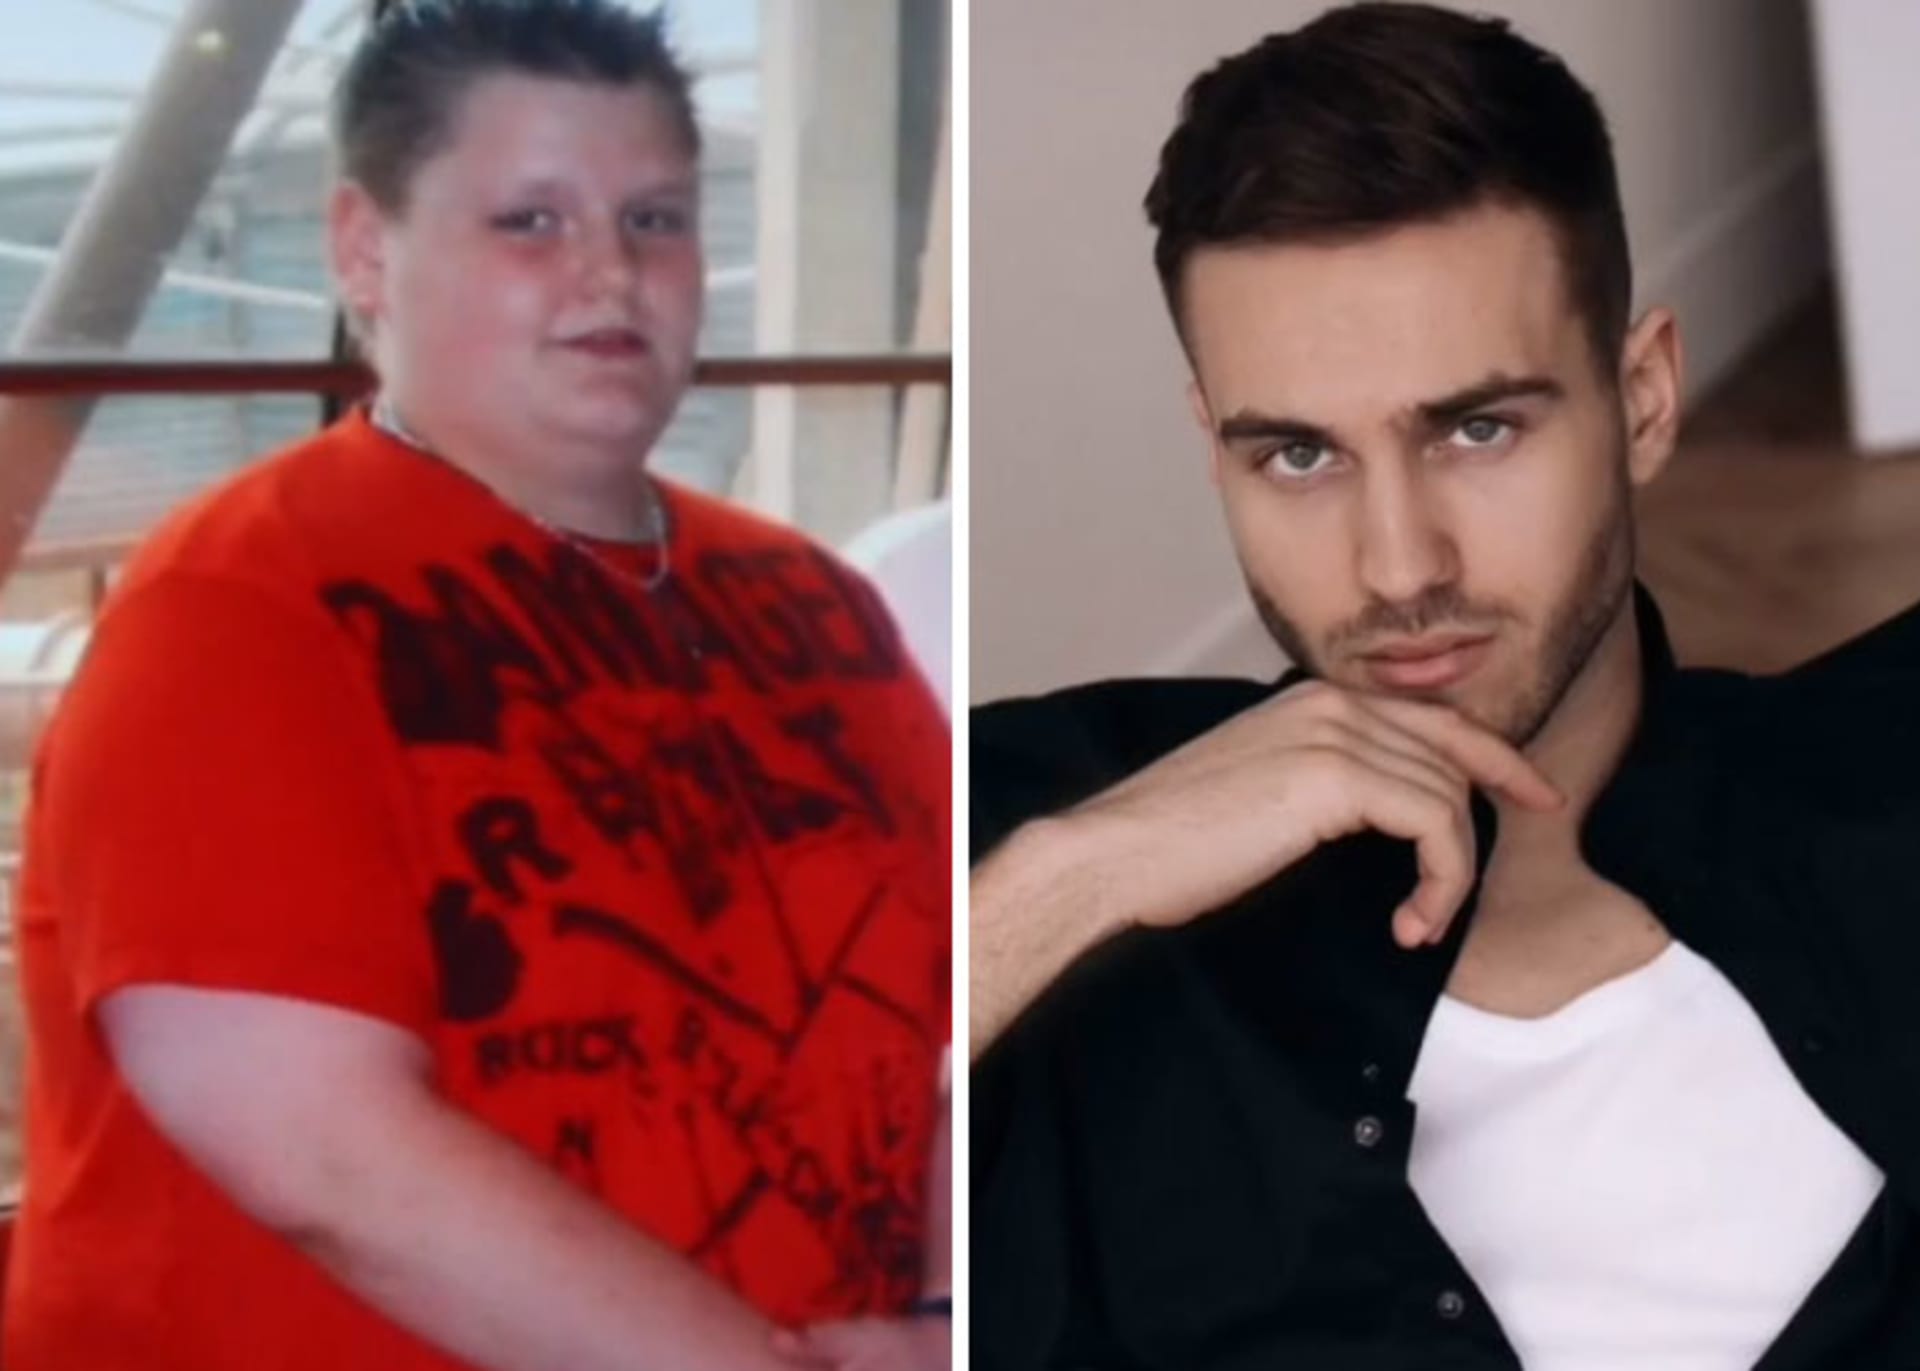 Proměny lidí od puberty 12